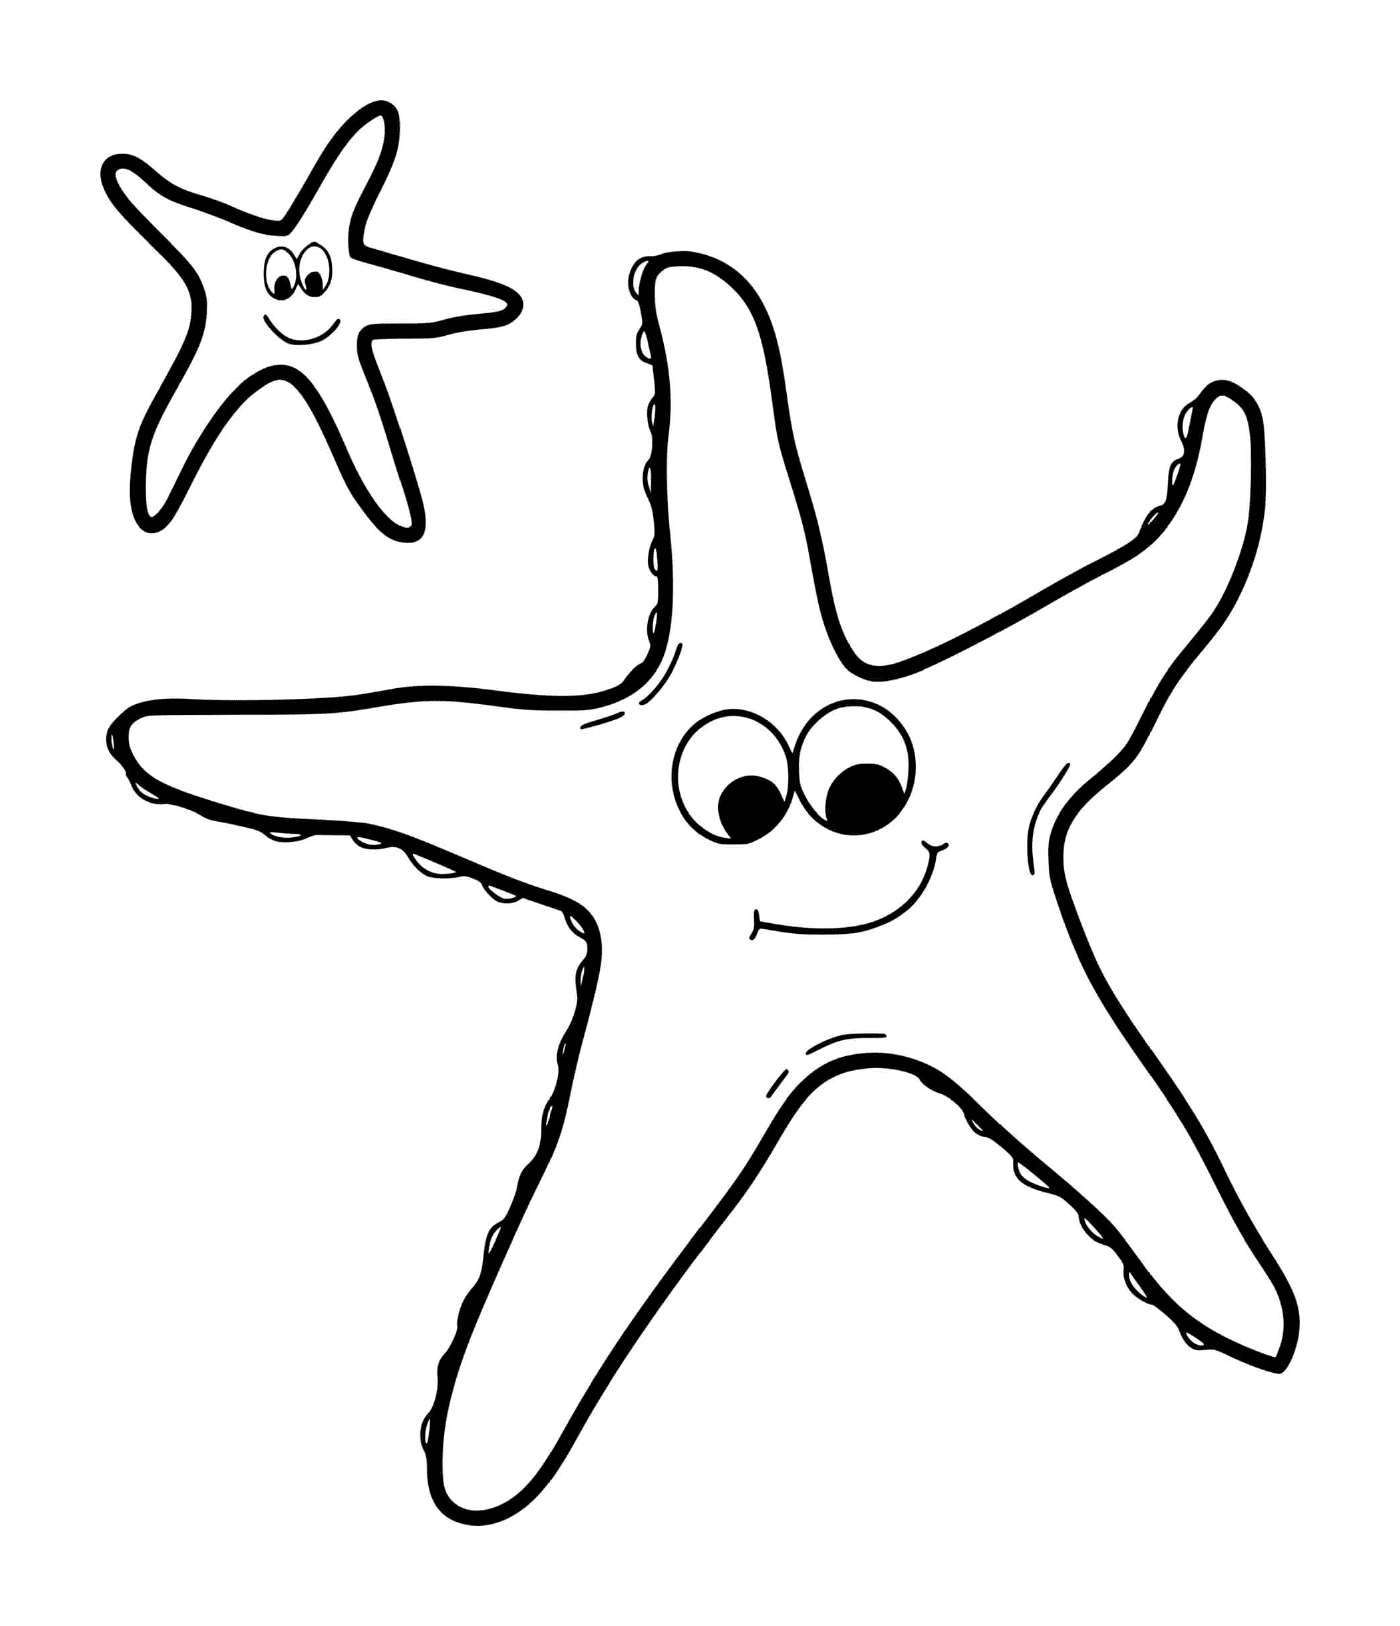  Duas estrelas-do-mar sorridentes 